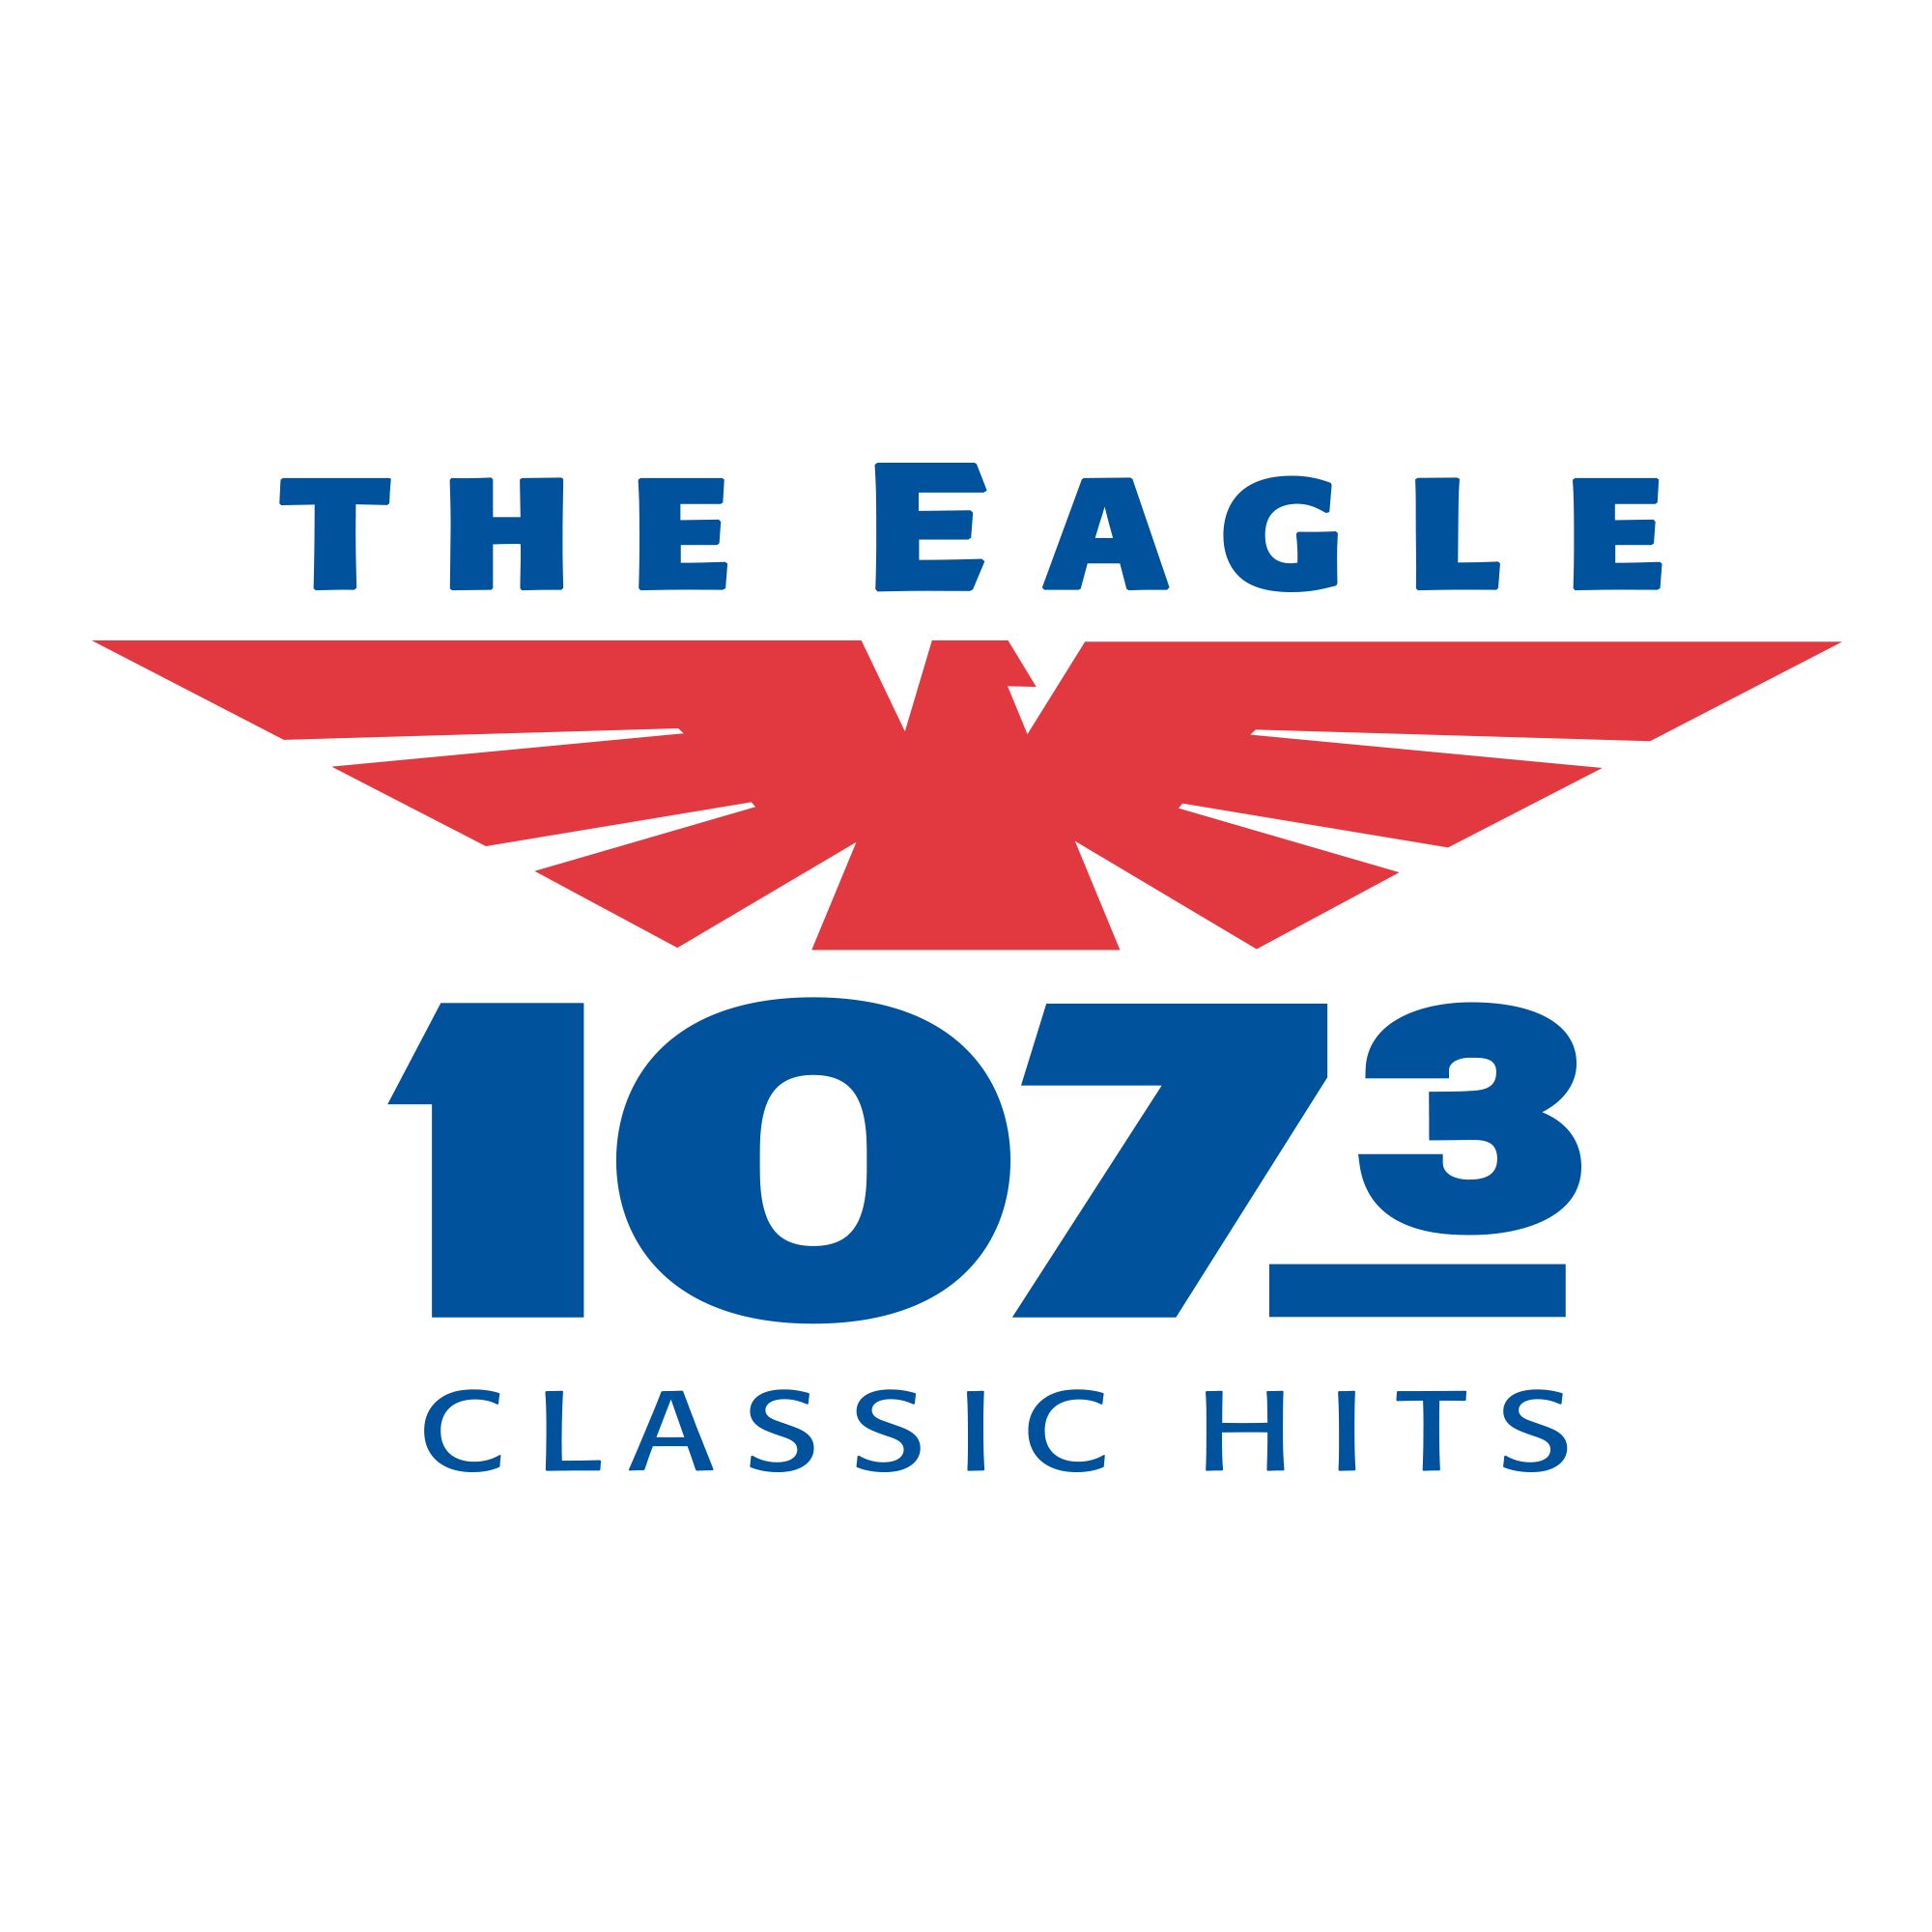 The Eagle: 107.3 Classic Hits